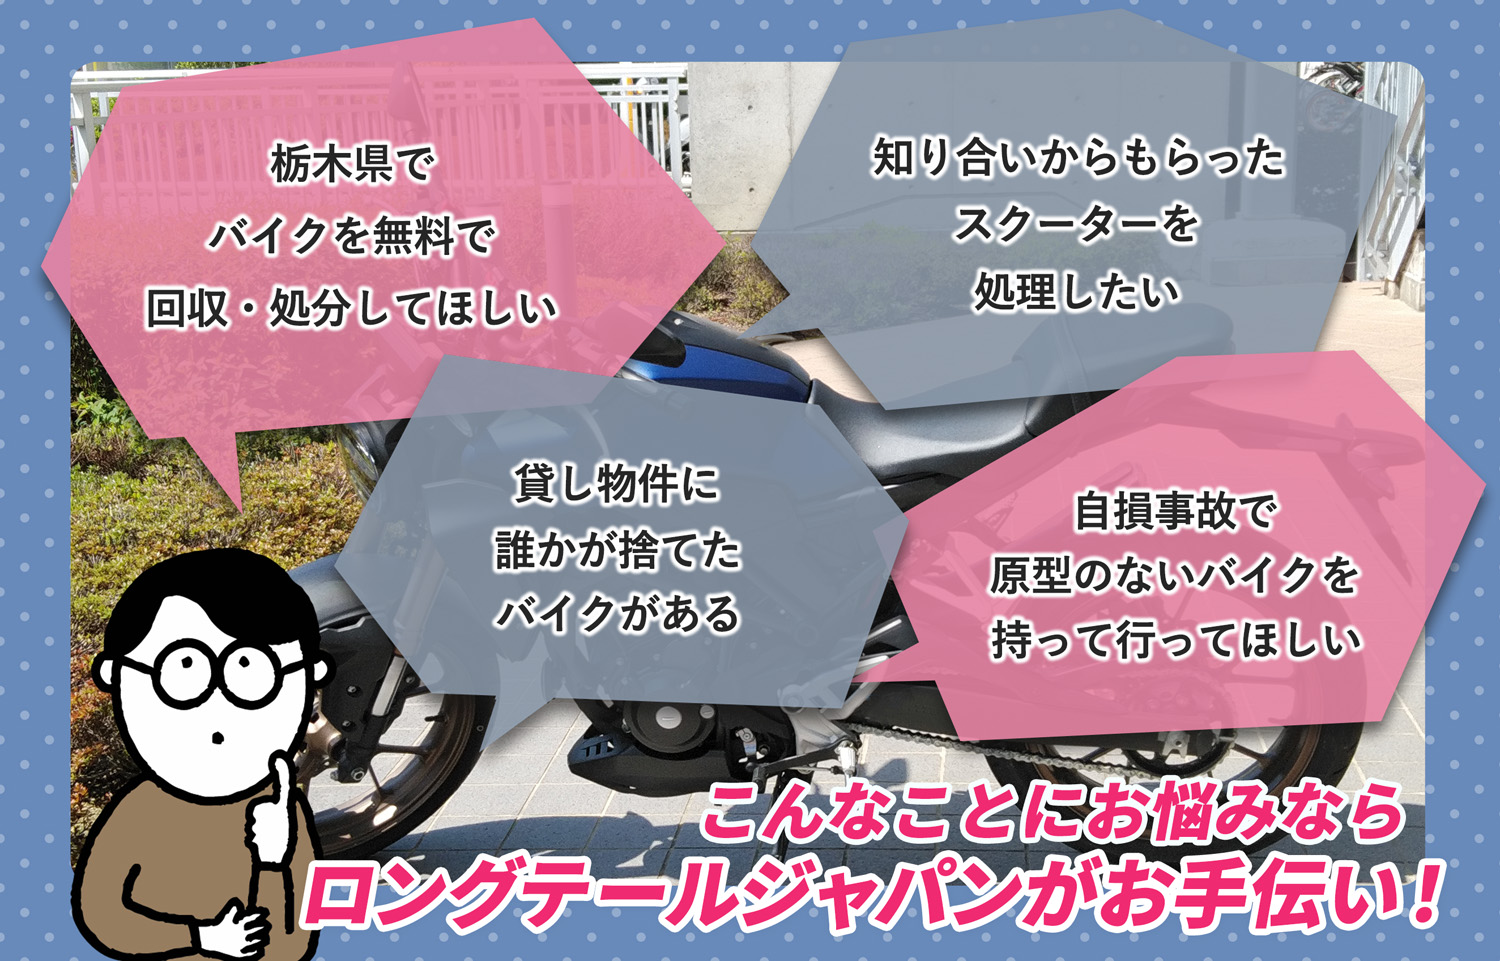 栃木県でこんなバイクの処分にお困りでしたらバイク無料回収処分隊がお手伝いいたします。